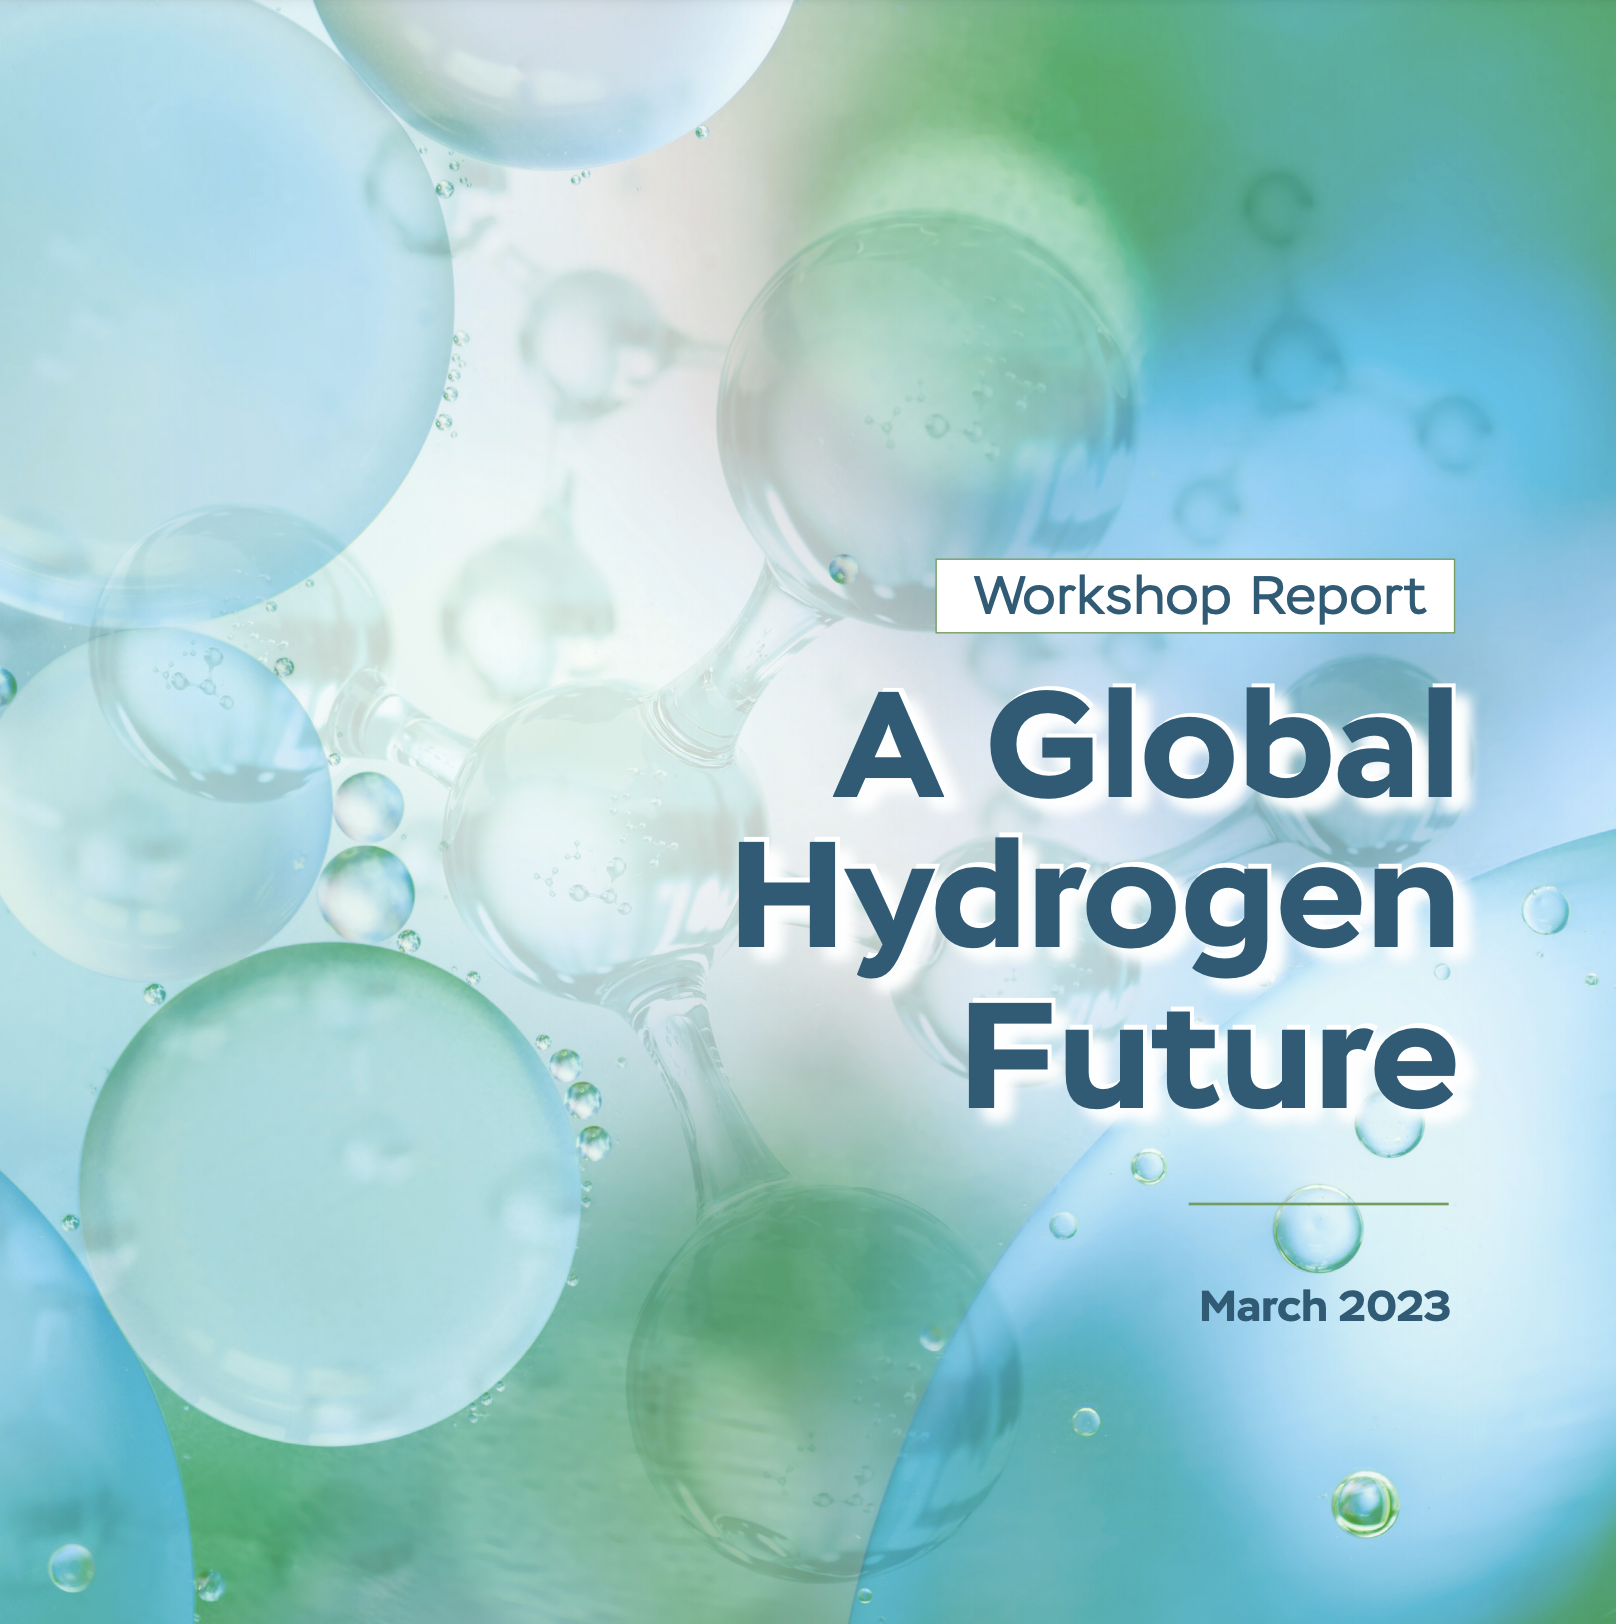 A Global Hydrogen Future